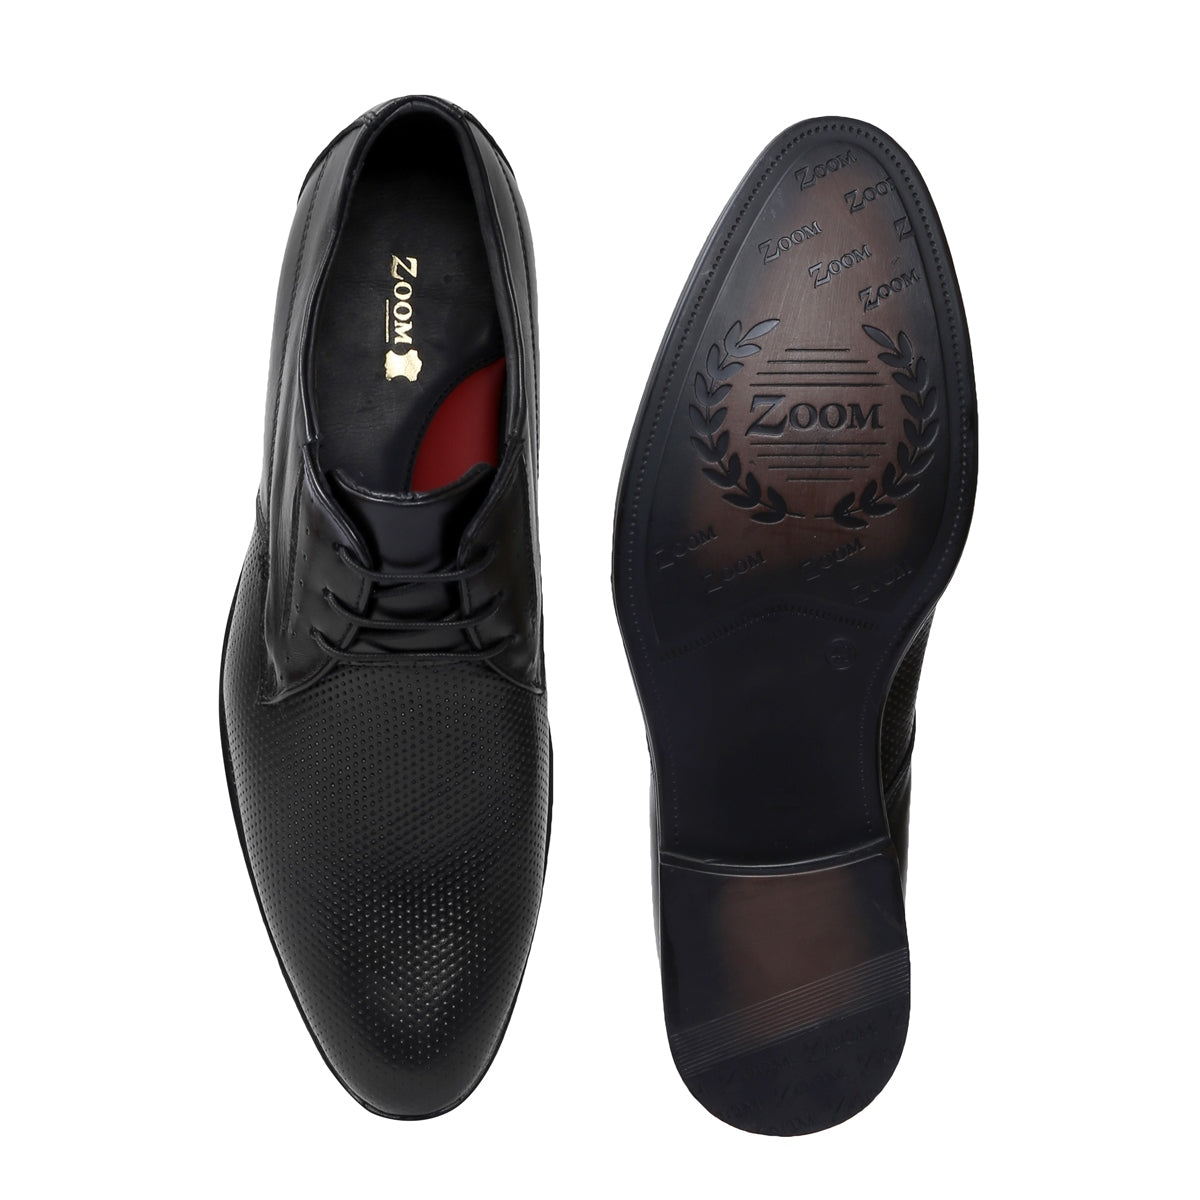 Derby Shoes for Men PG-53_3